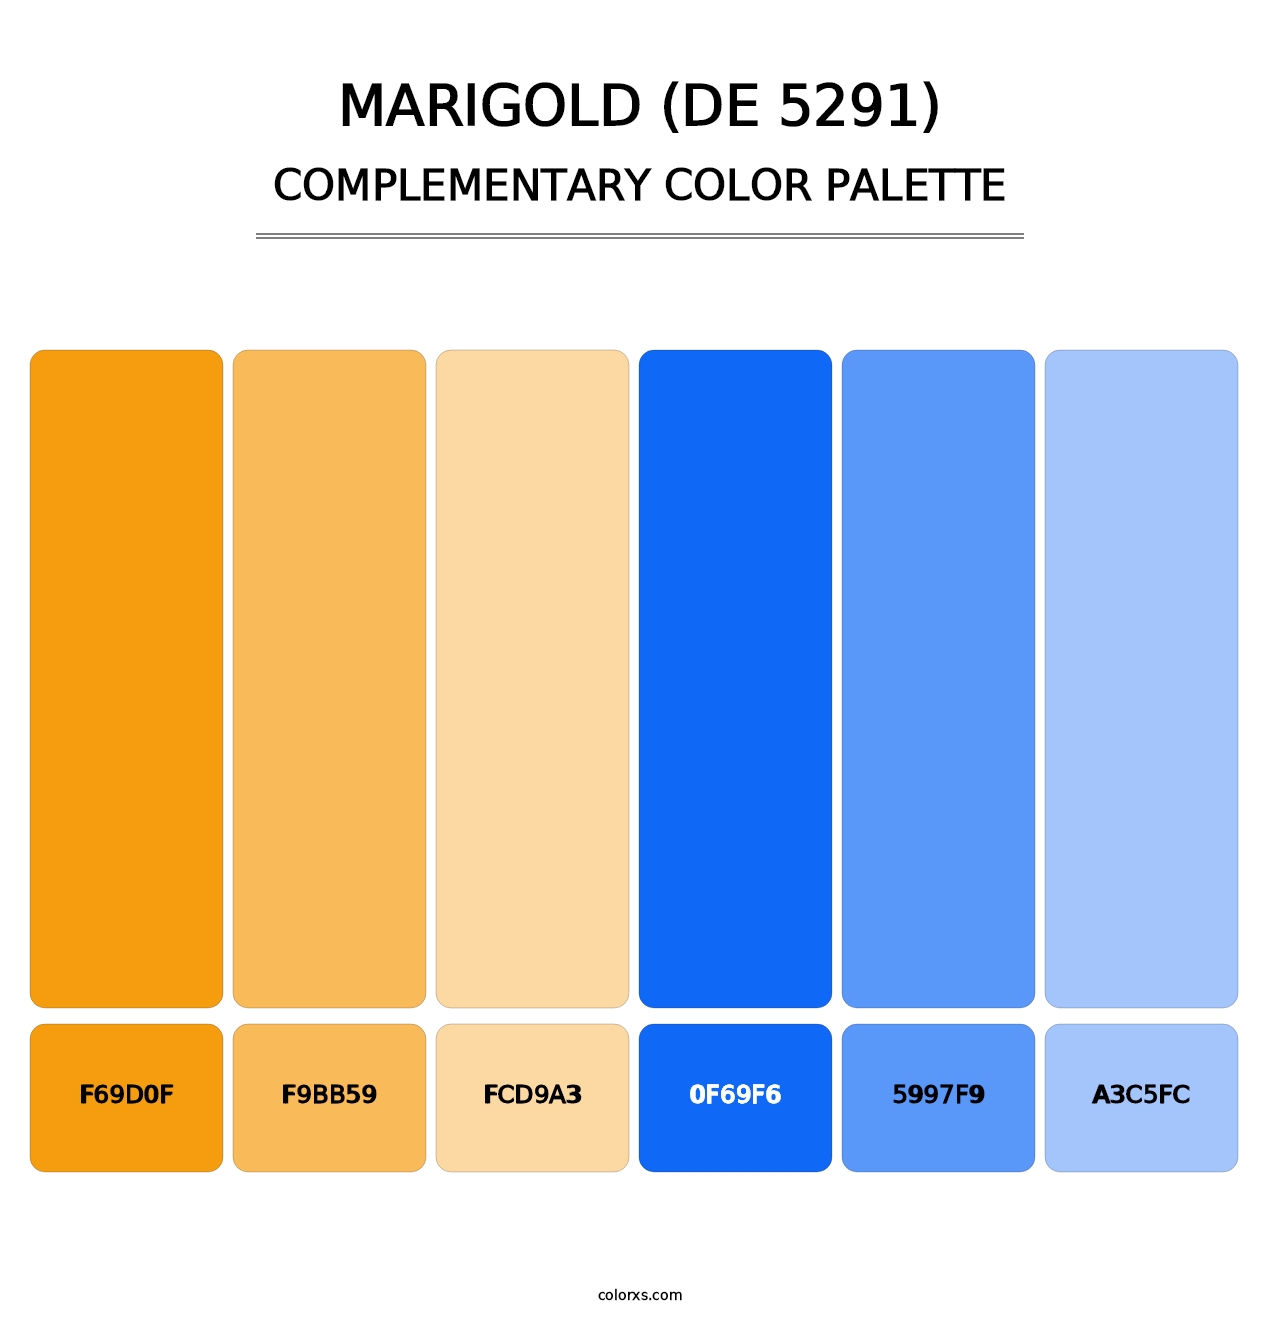 Marigold (DE 5291) - Complementary Color Palette